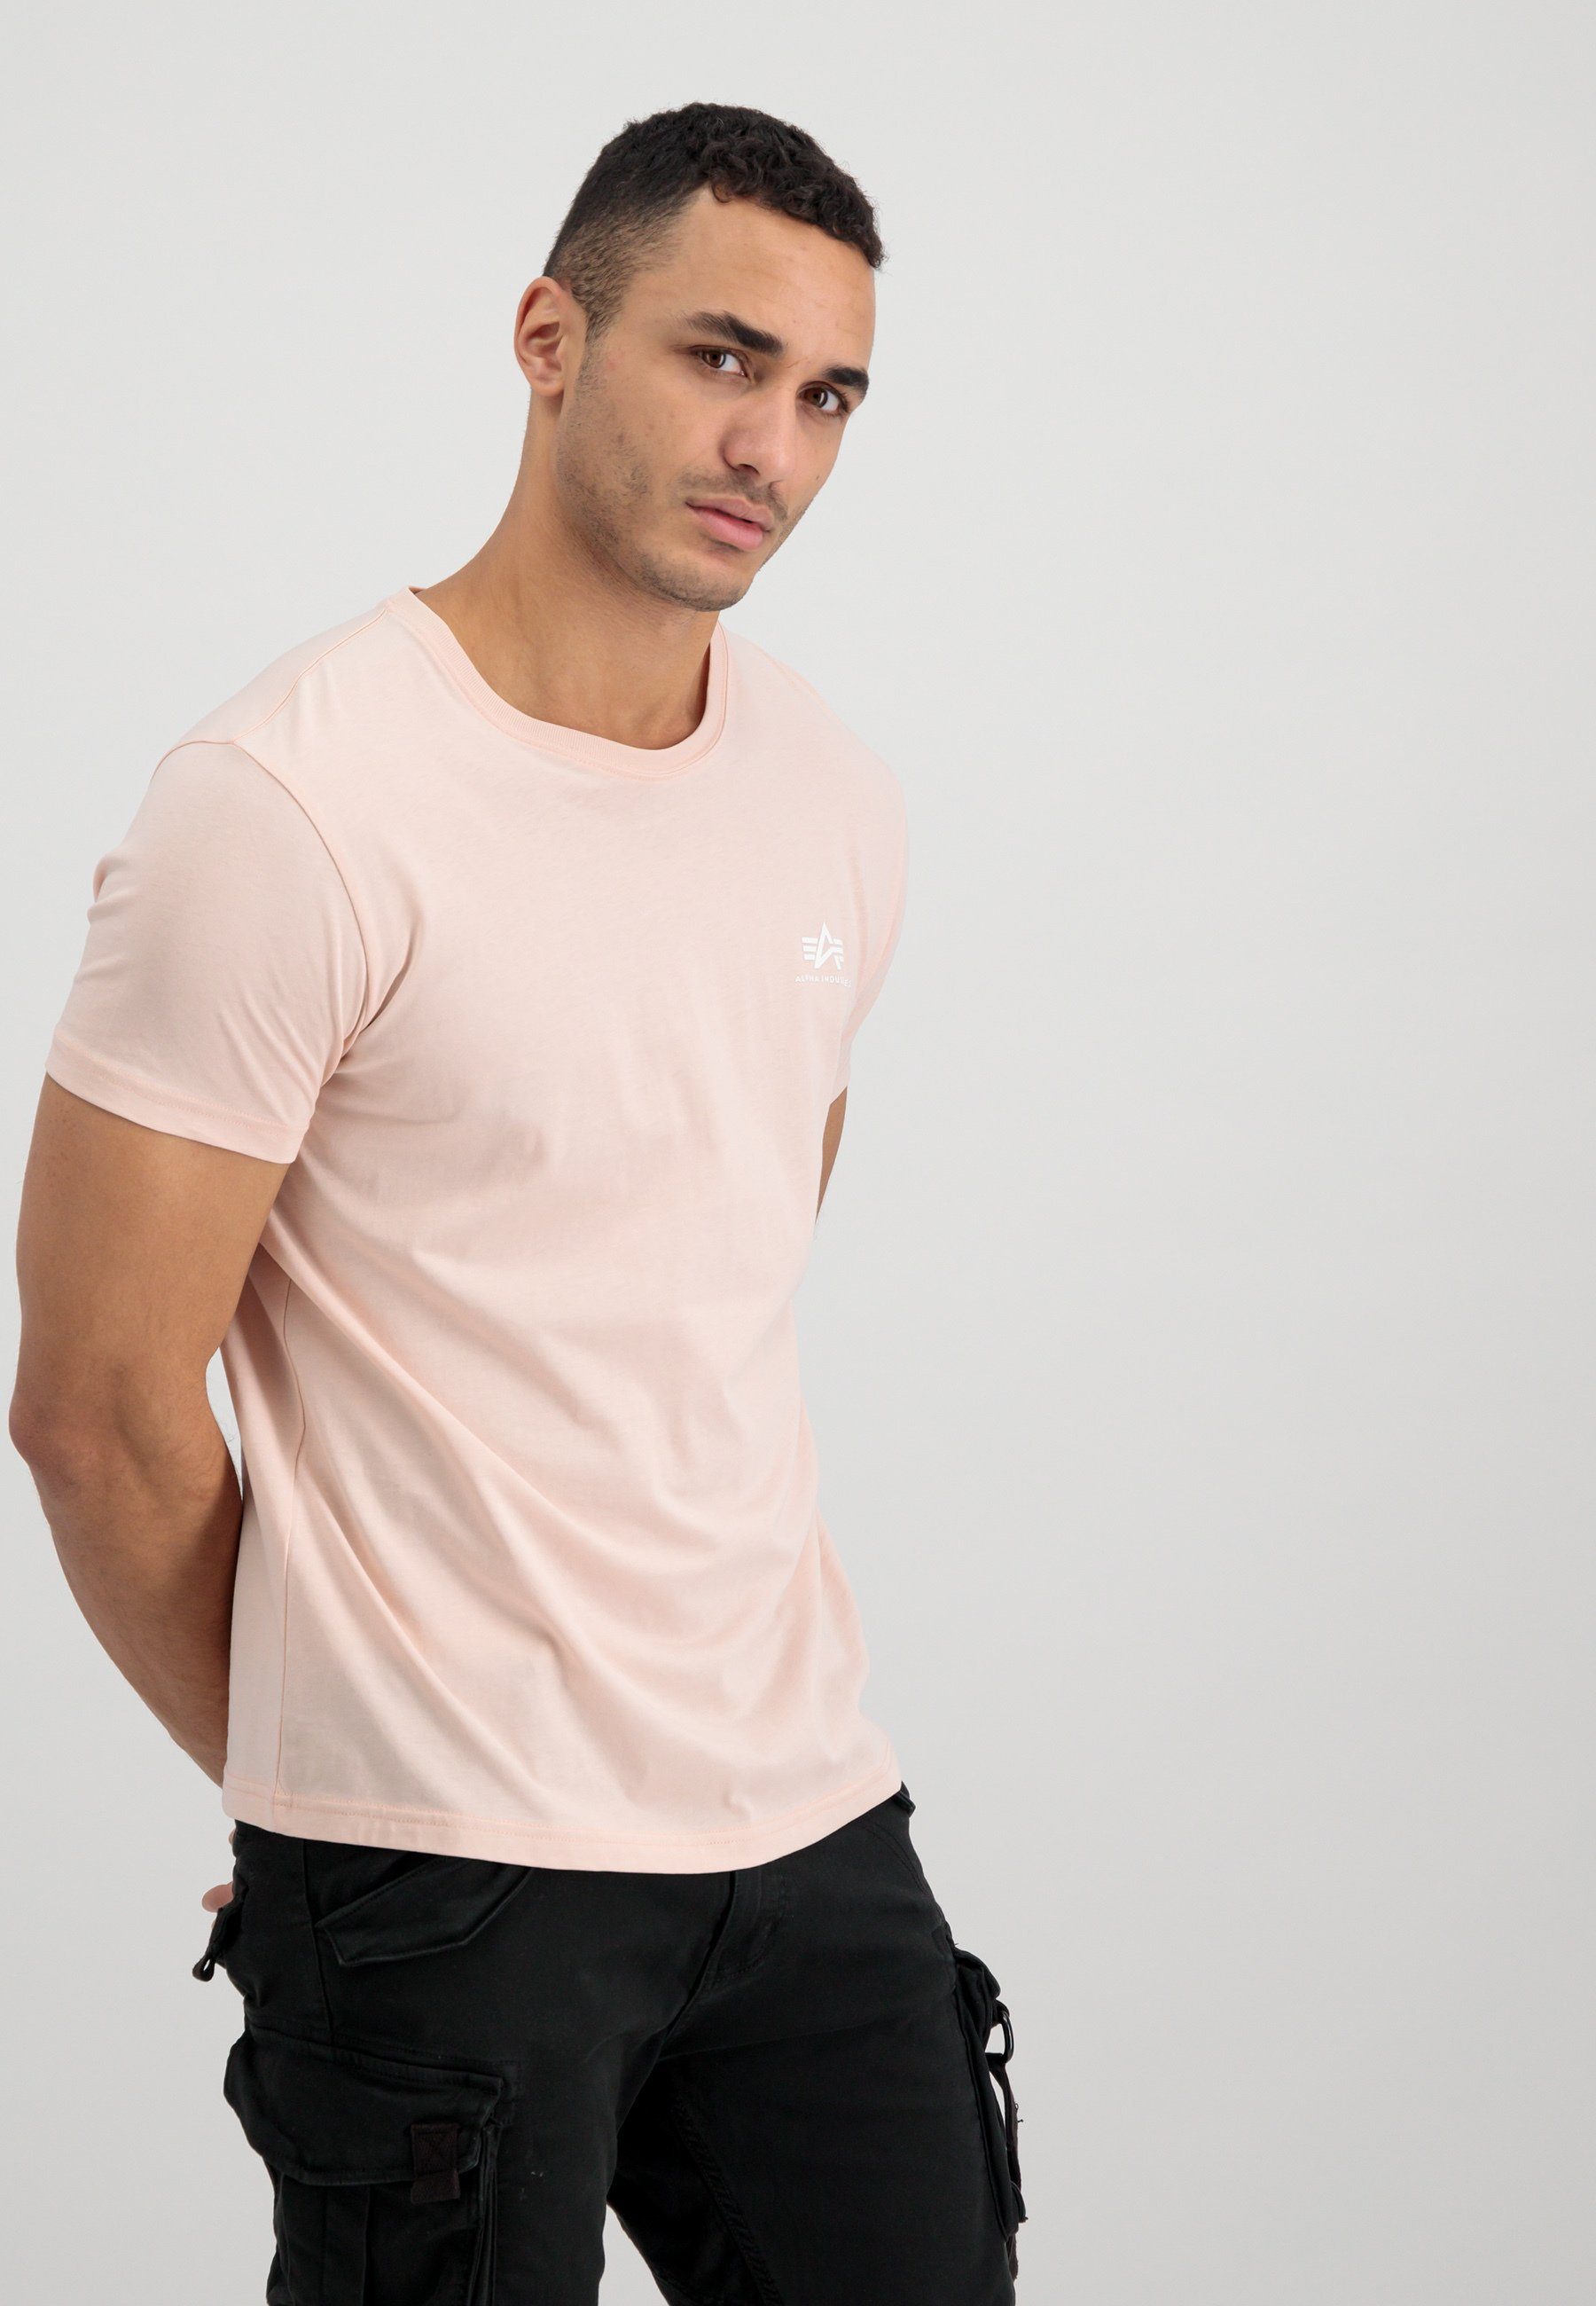 Alpha T Alpha Industries Industries T-Shirt T-Shirts - Men pink Backprint